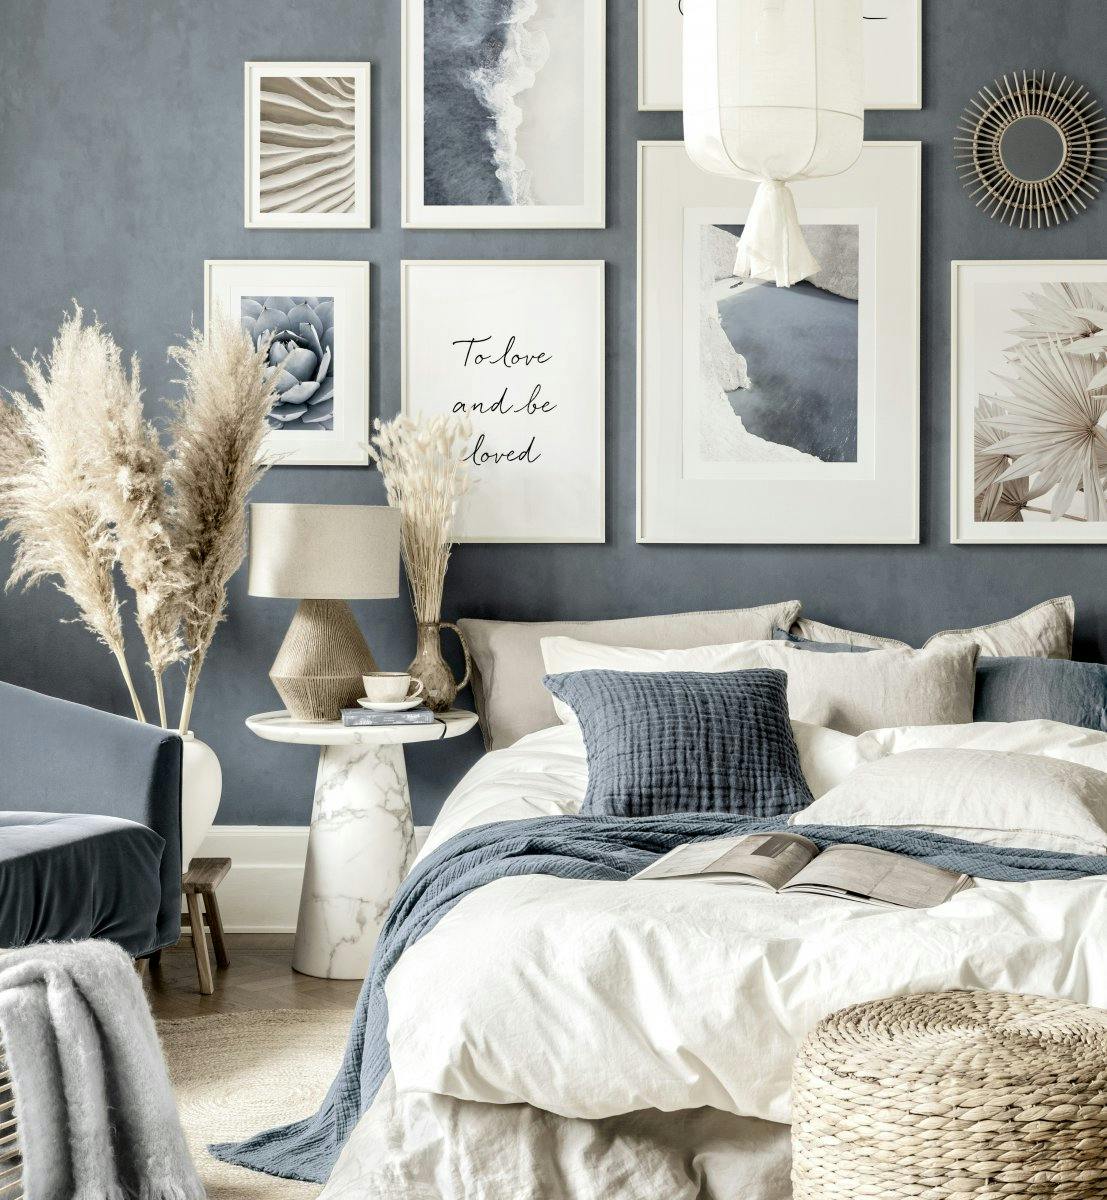 Blauwe beige wanddecoratie blauwe slaapkamer witte houten fotokaders